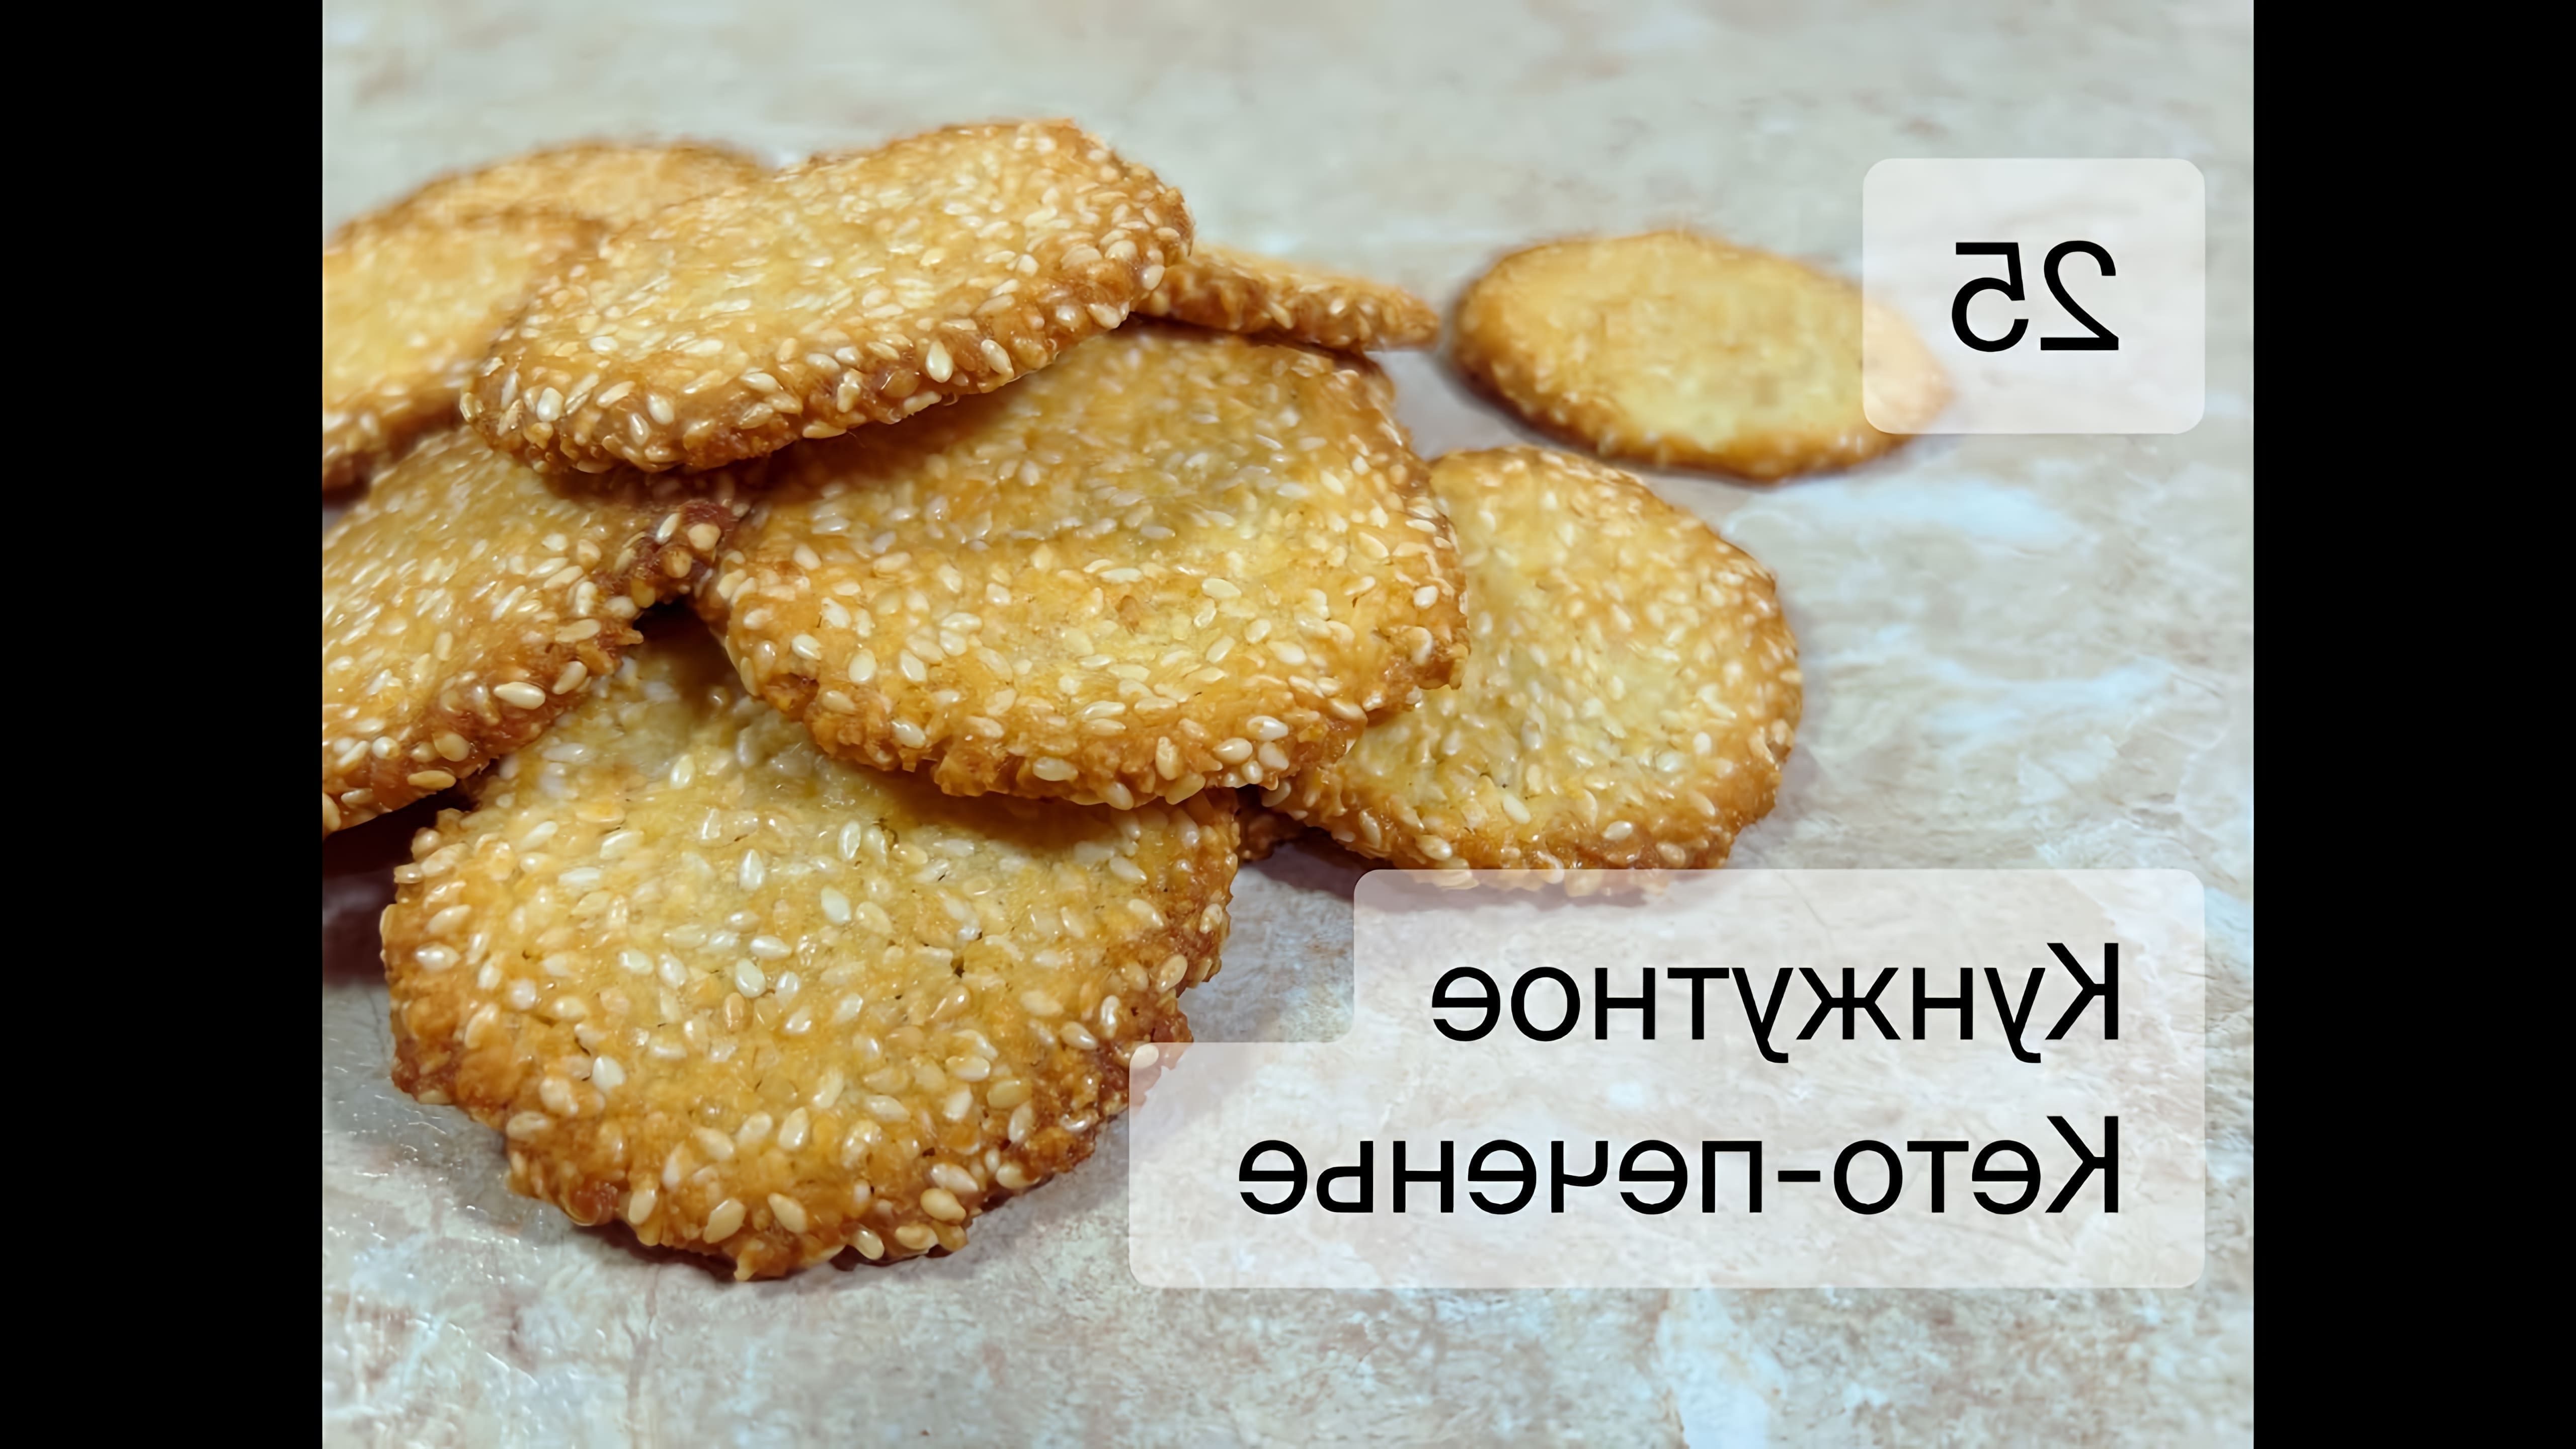 В этом видео-ролике будет представлен рецепт кето-печенья с кунжутом